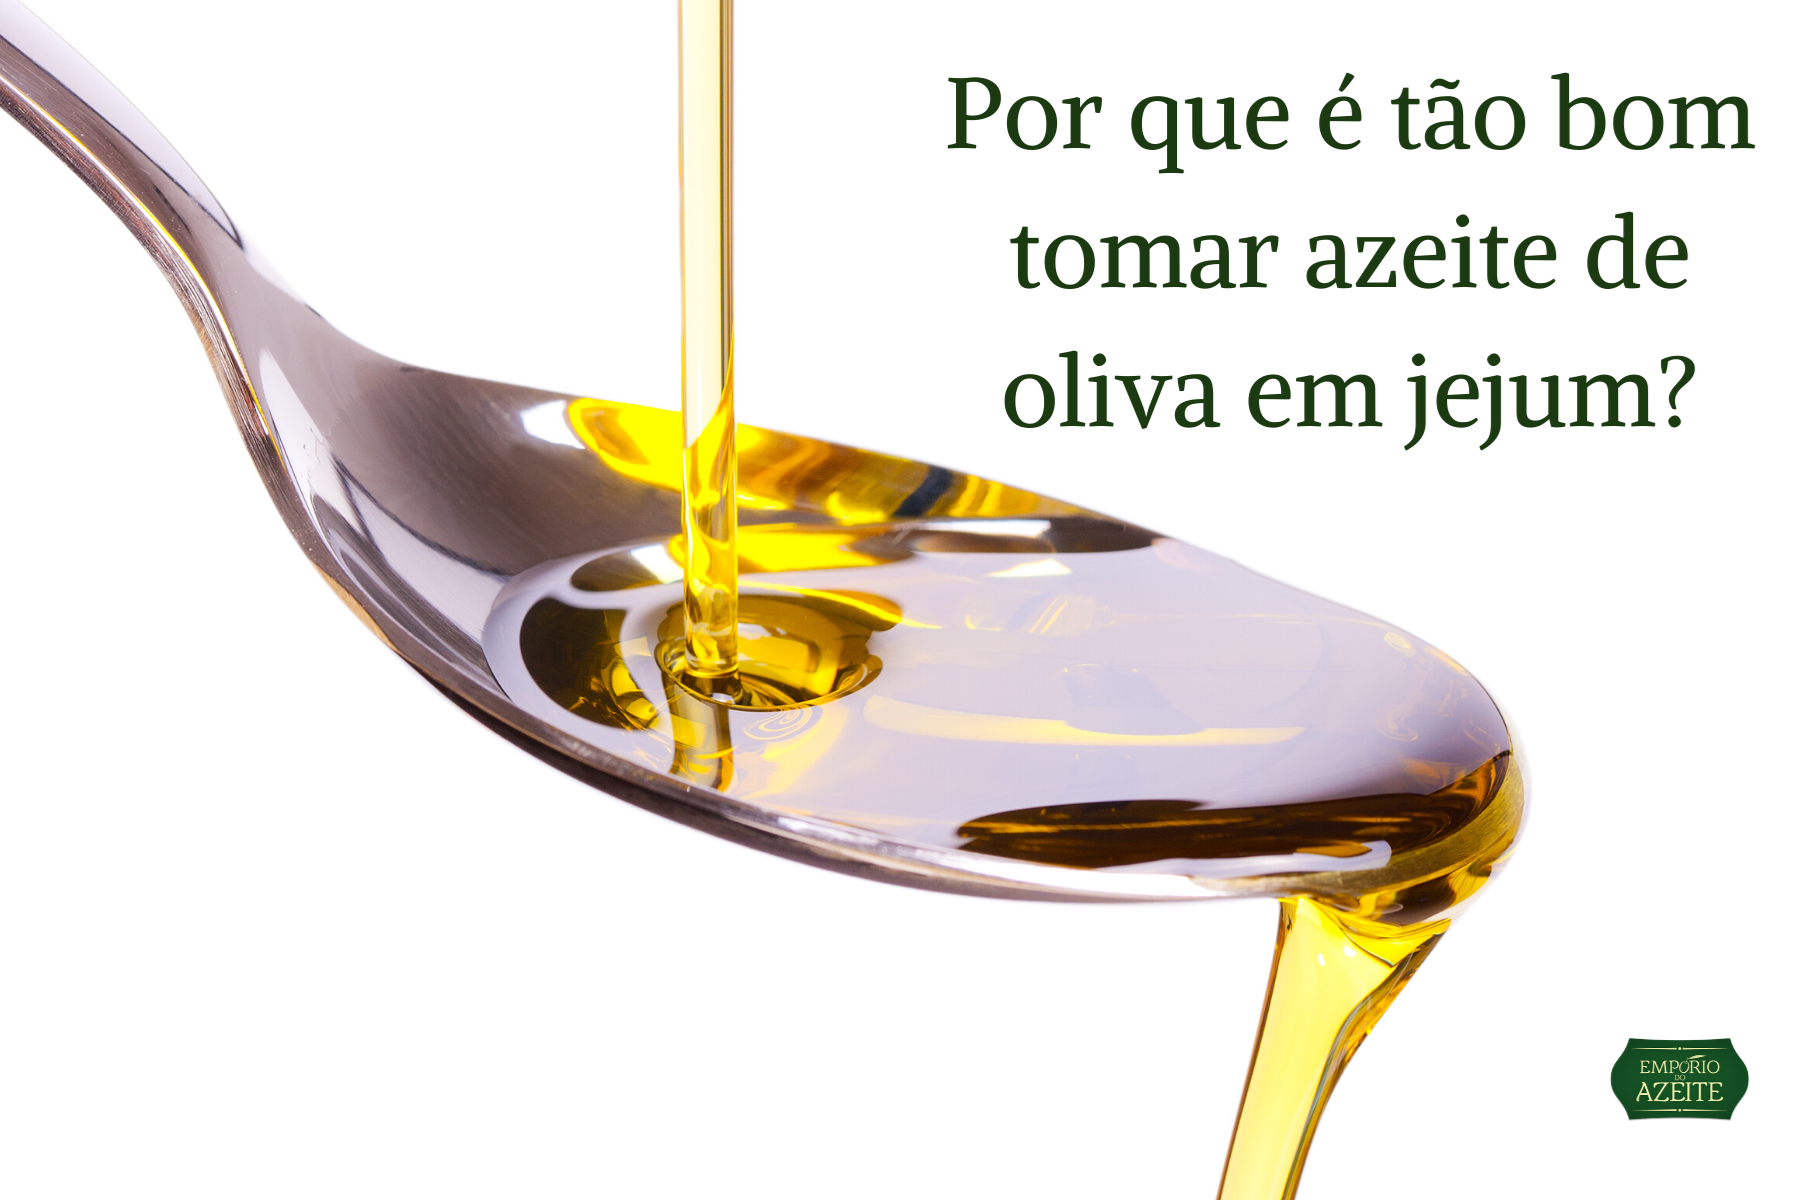 Azeite de oliva em JEJUM | Emporio do Azeite